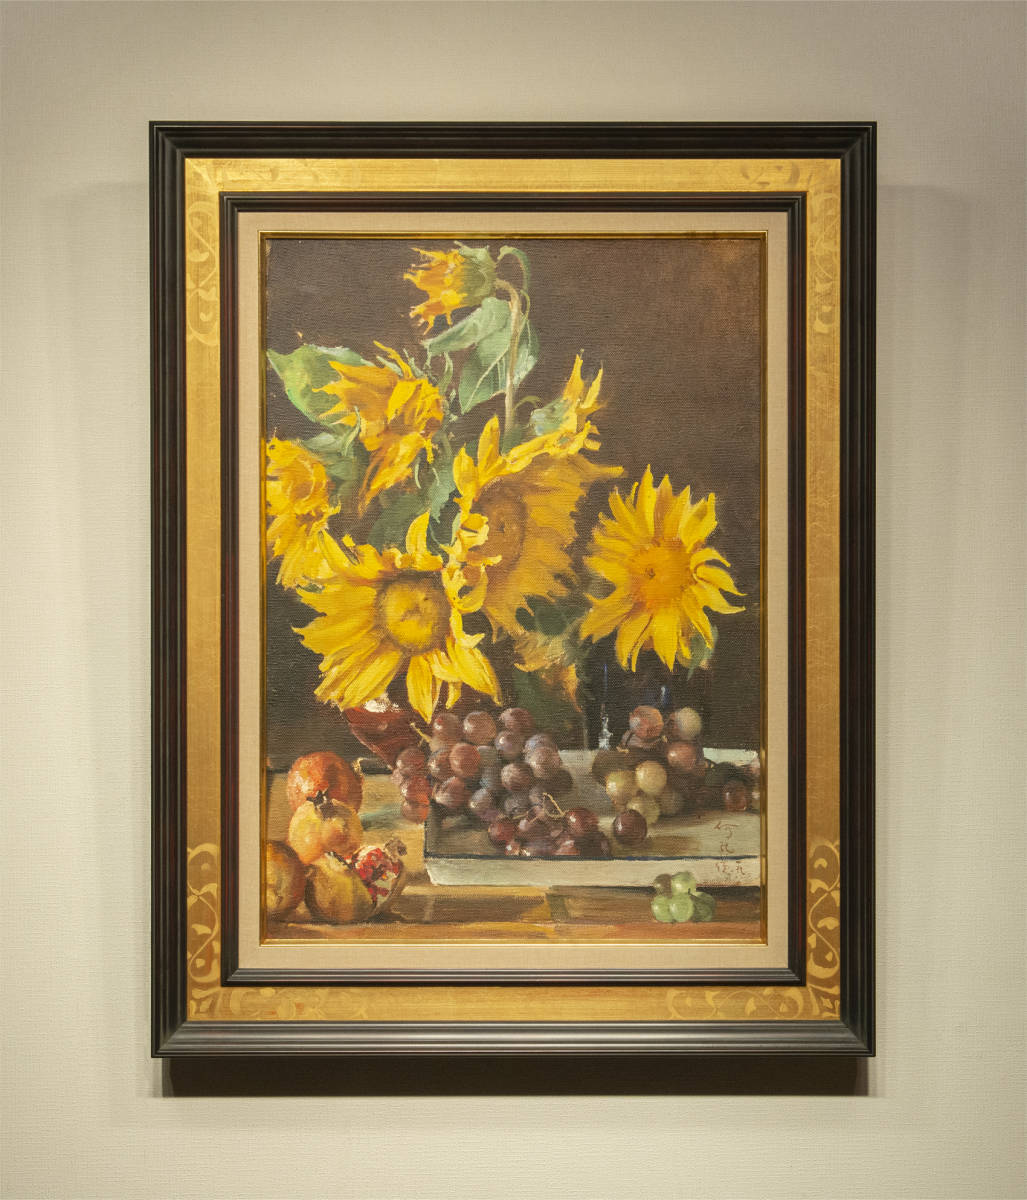 何孔德 1989年作 向日葵, 葡萄和石榴 油画 額装 真作保証 中国 絵画 現代美術, 絵画, 油彩, 静物画